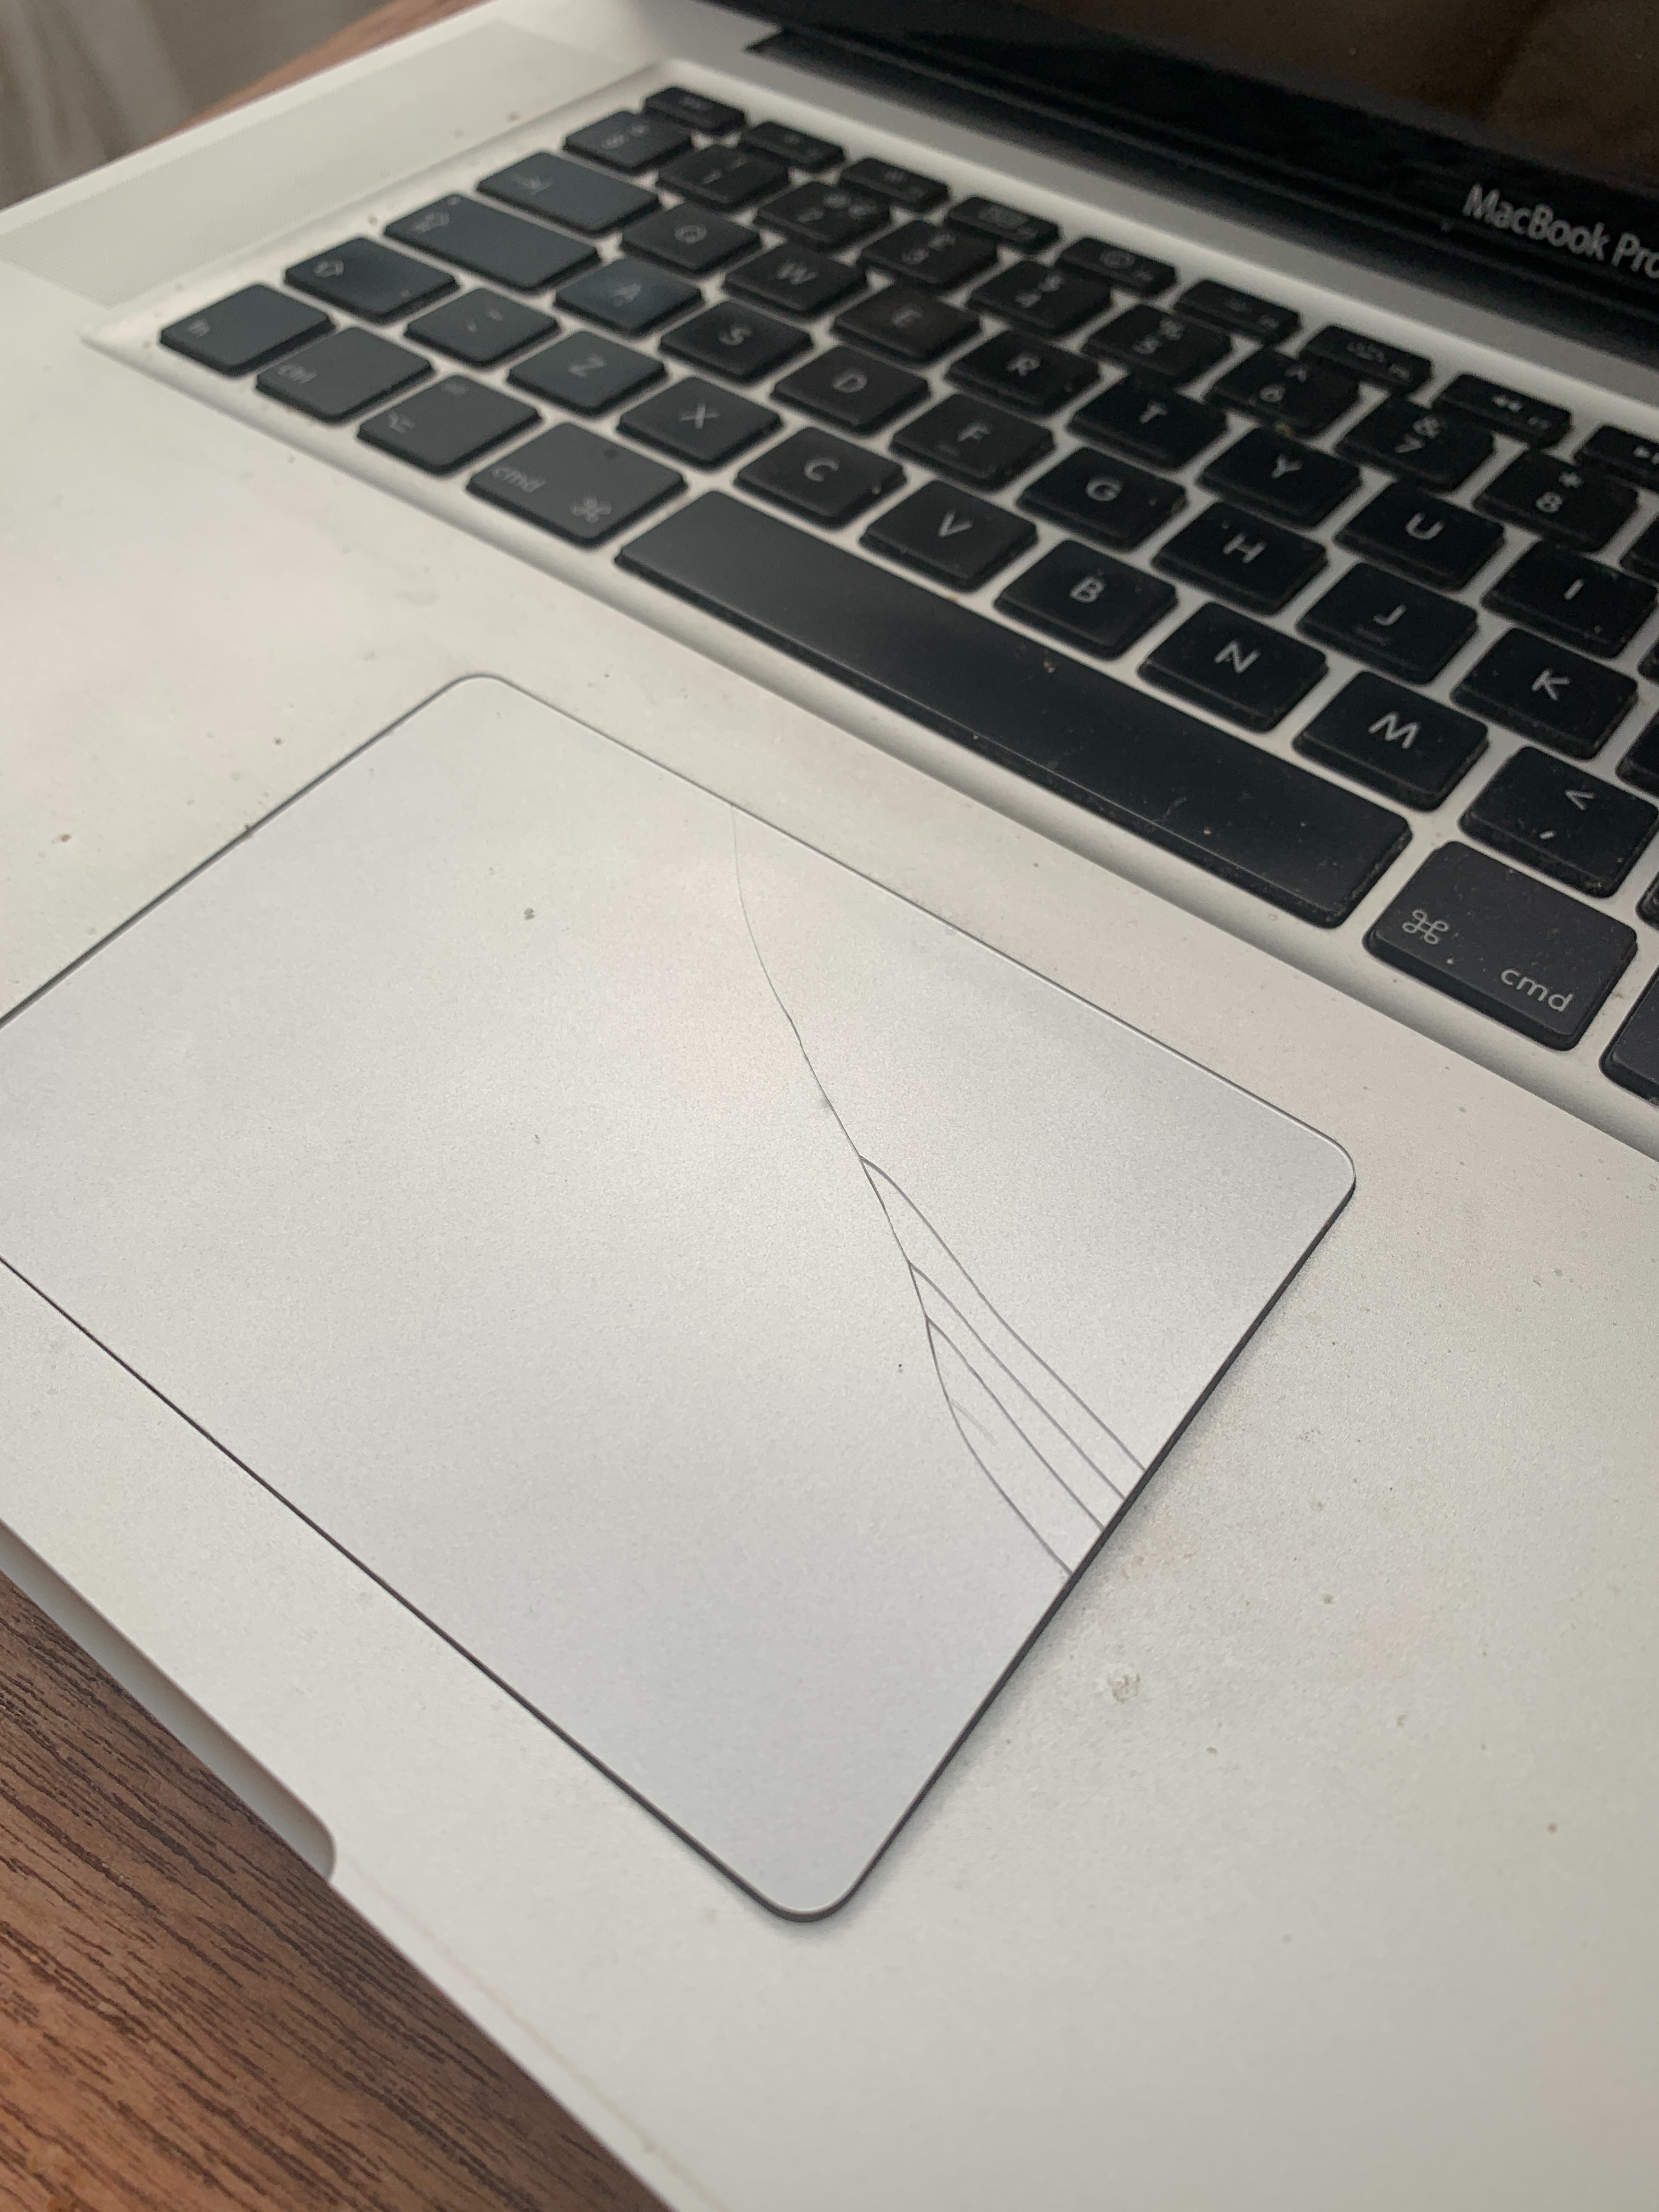 MacBook Pro battery swollen -